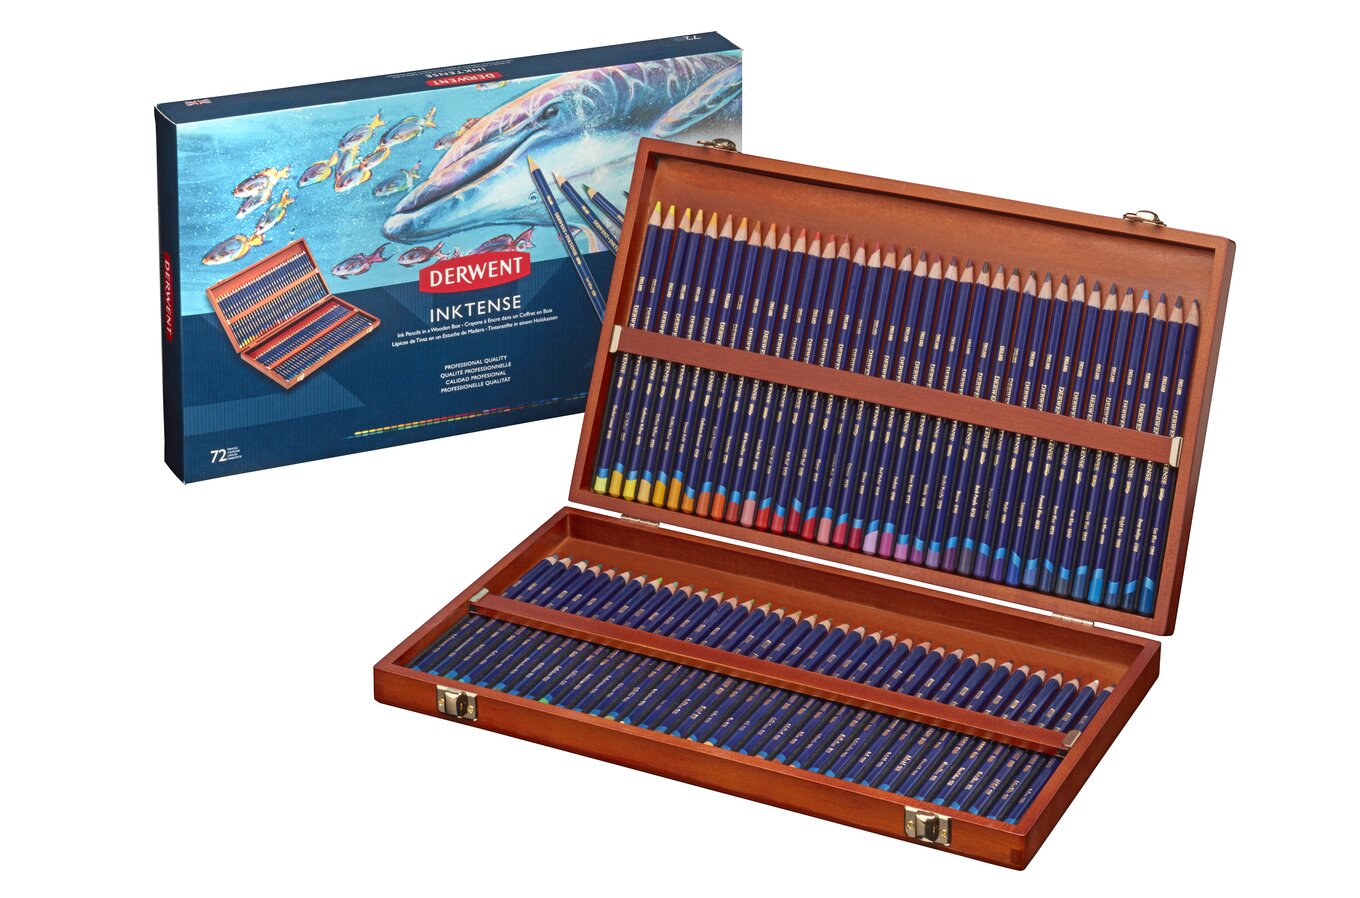 Derwent Inktense Pencils, Wooden Box, Set of 72